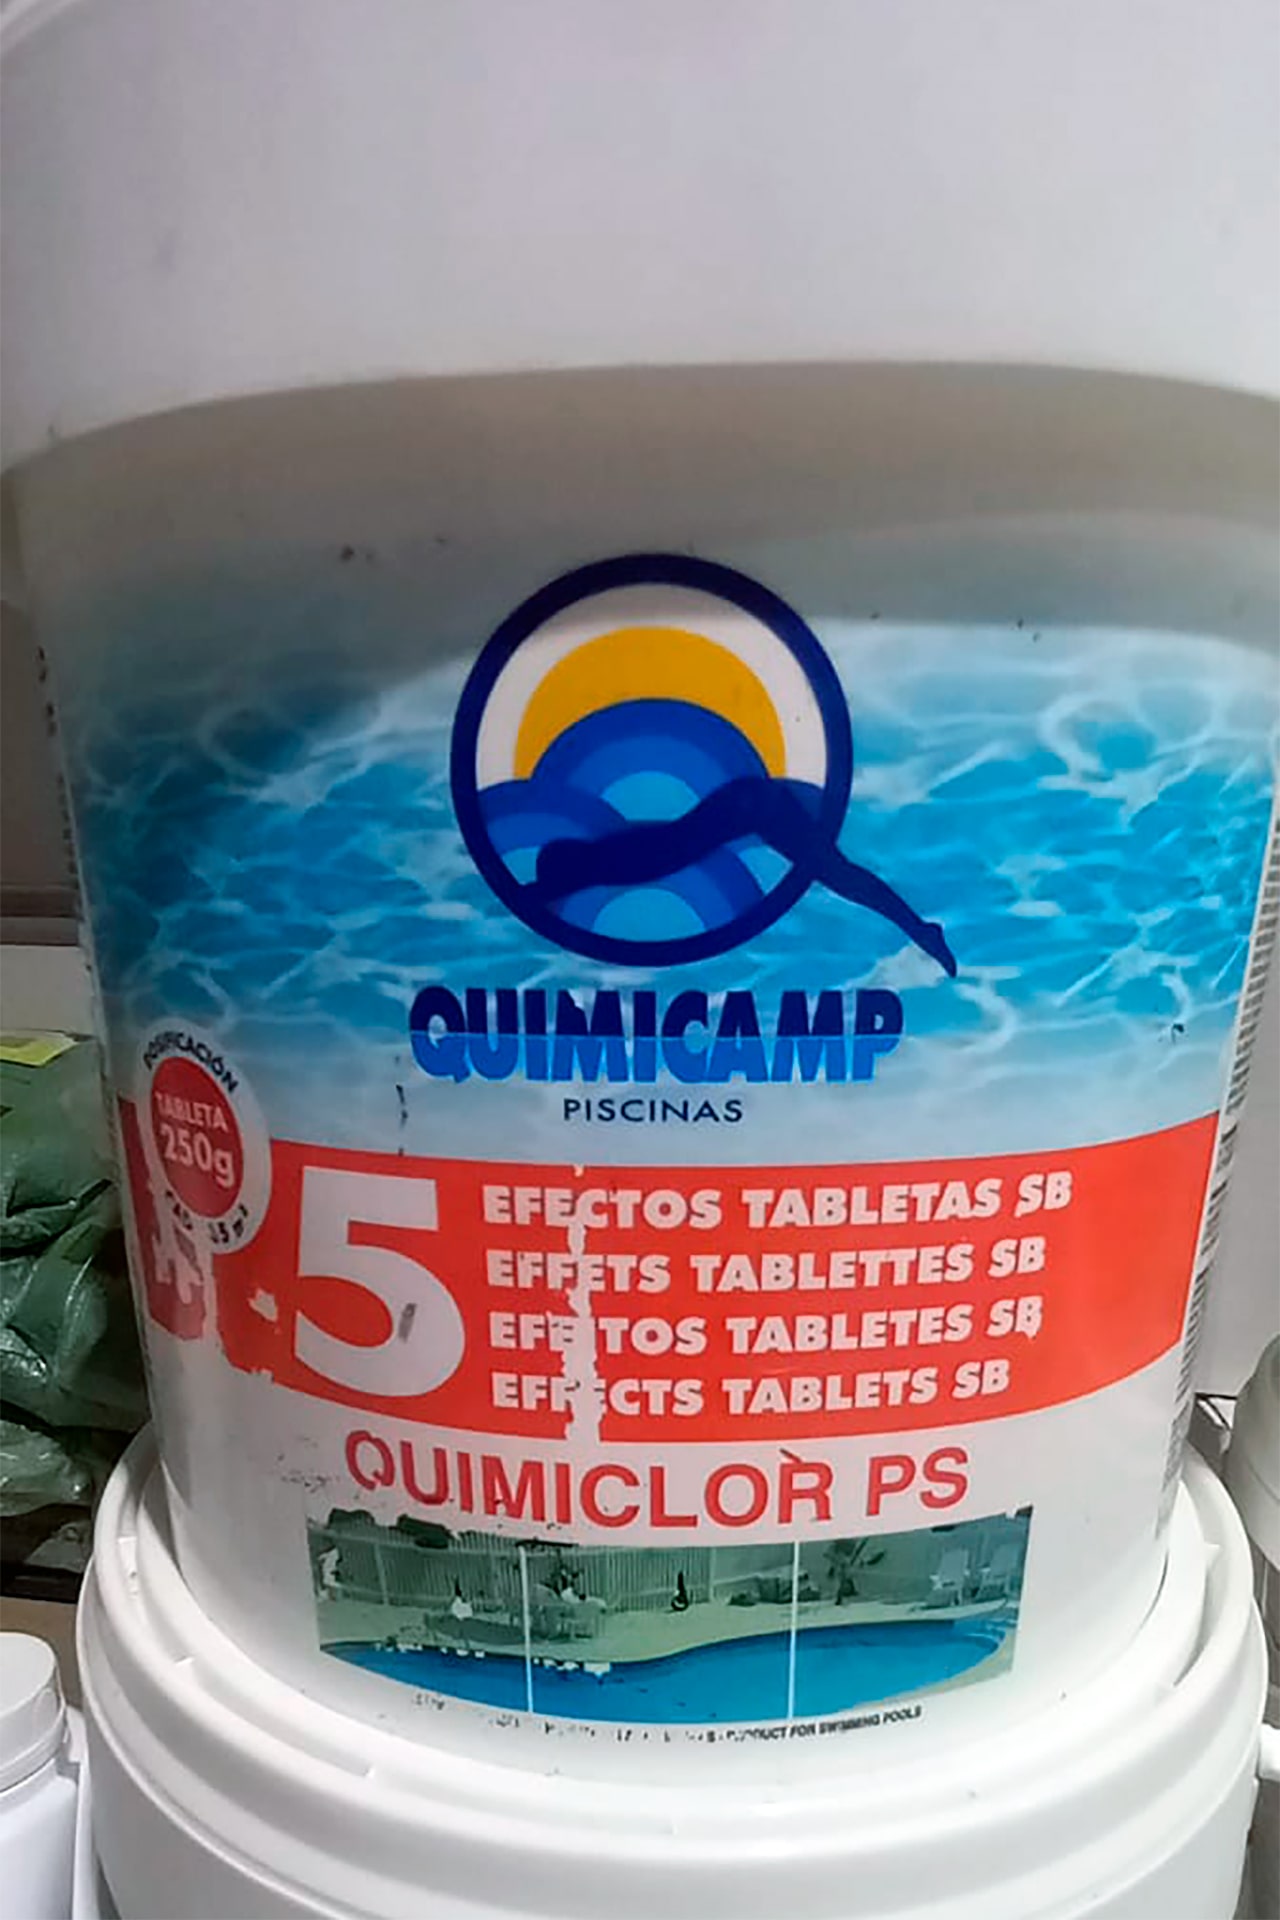 QuimiCamp piscinas Cloro Qumiclor PS tabletas 250g Semillería Echaguy Dos Hermanas